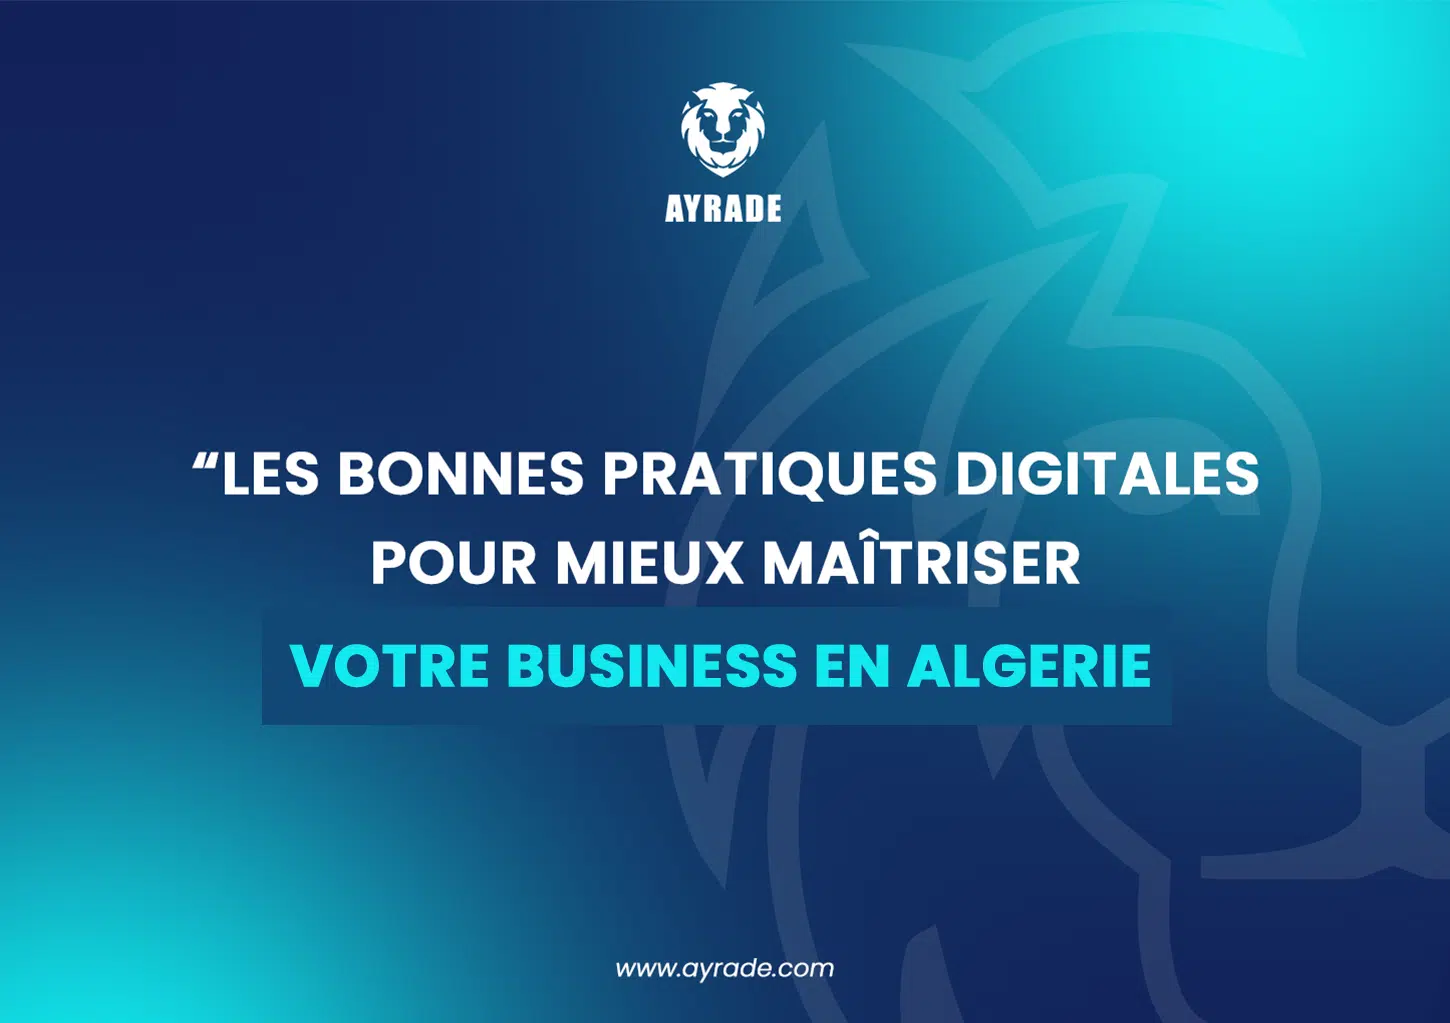 Les bonnes pratiques digitales pour mieux maîtriser votre business en Algérie !